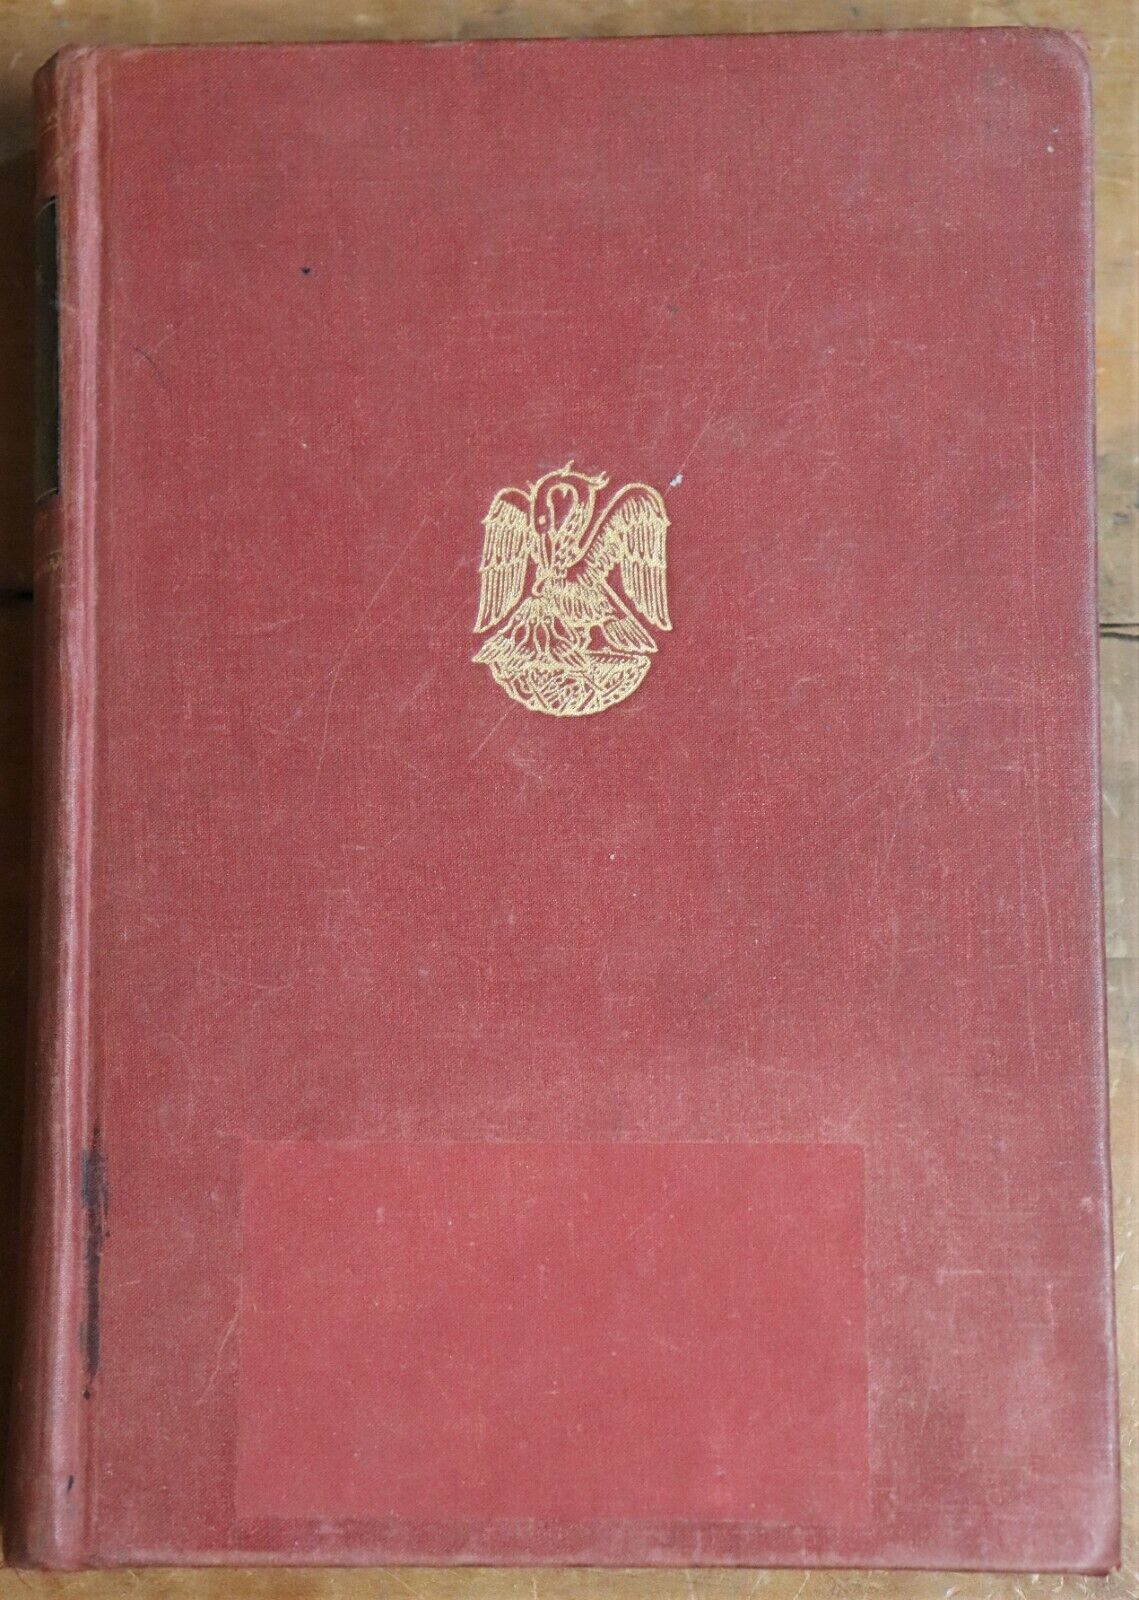 Architecture in Britain 1530 to 1830 - c1953 - 1st Edition Architecture Book - 0